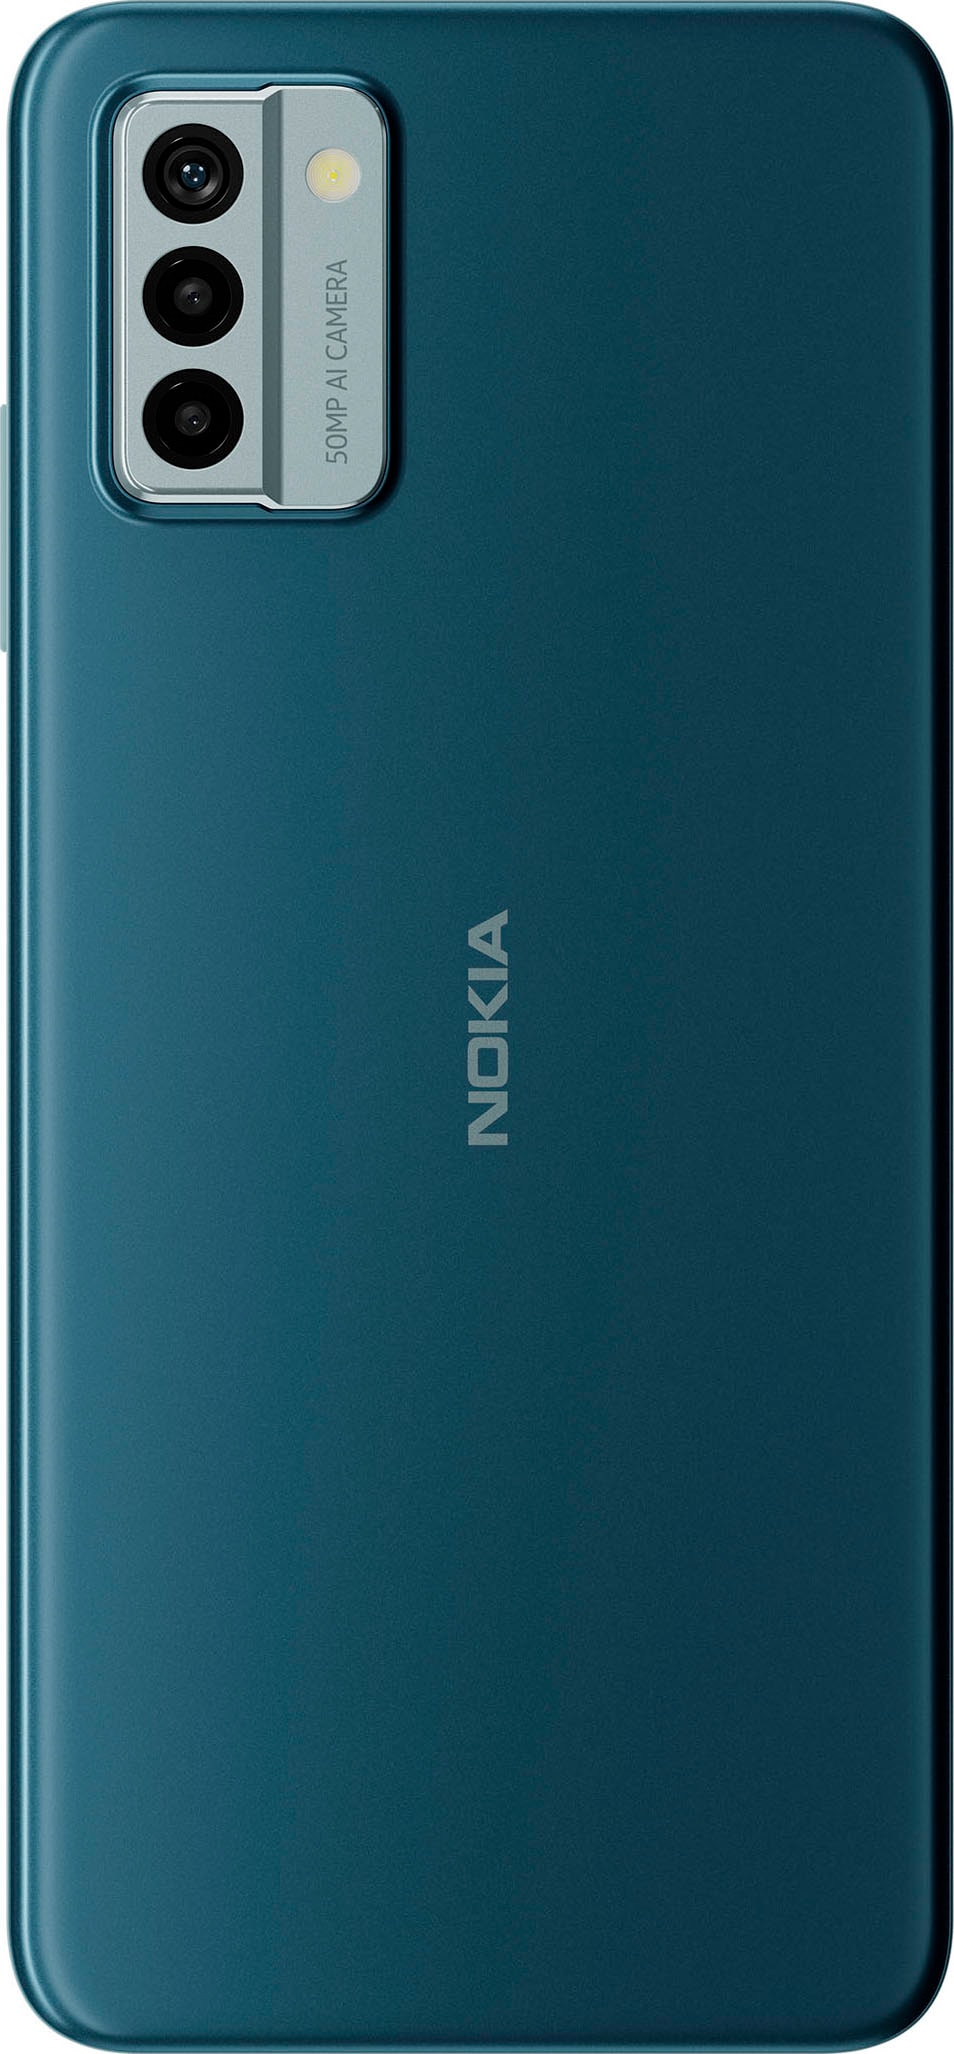 XXL cm/6,52 GB Speicherplatz, Zoll, »G22«, 64 Jahre Smartphone Garantie | UNIVERSAL ➥ 50 Nokia Kamera 16,56 MP grau, 3